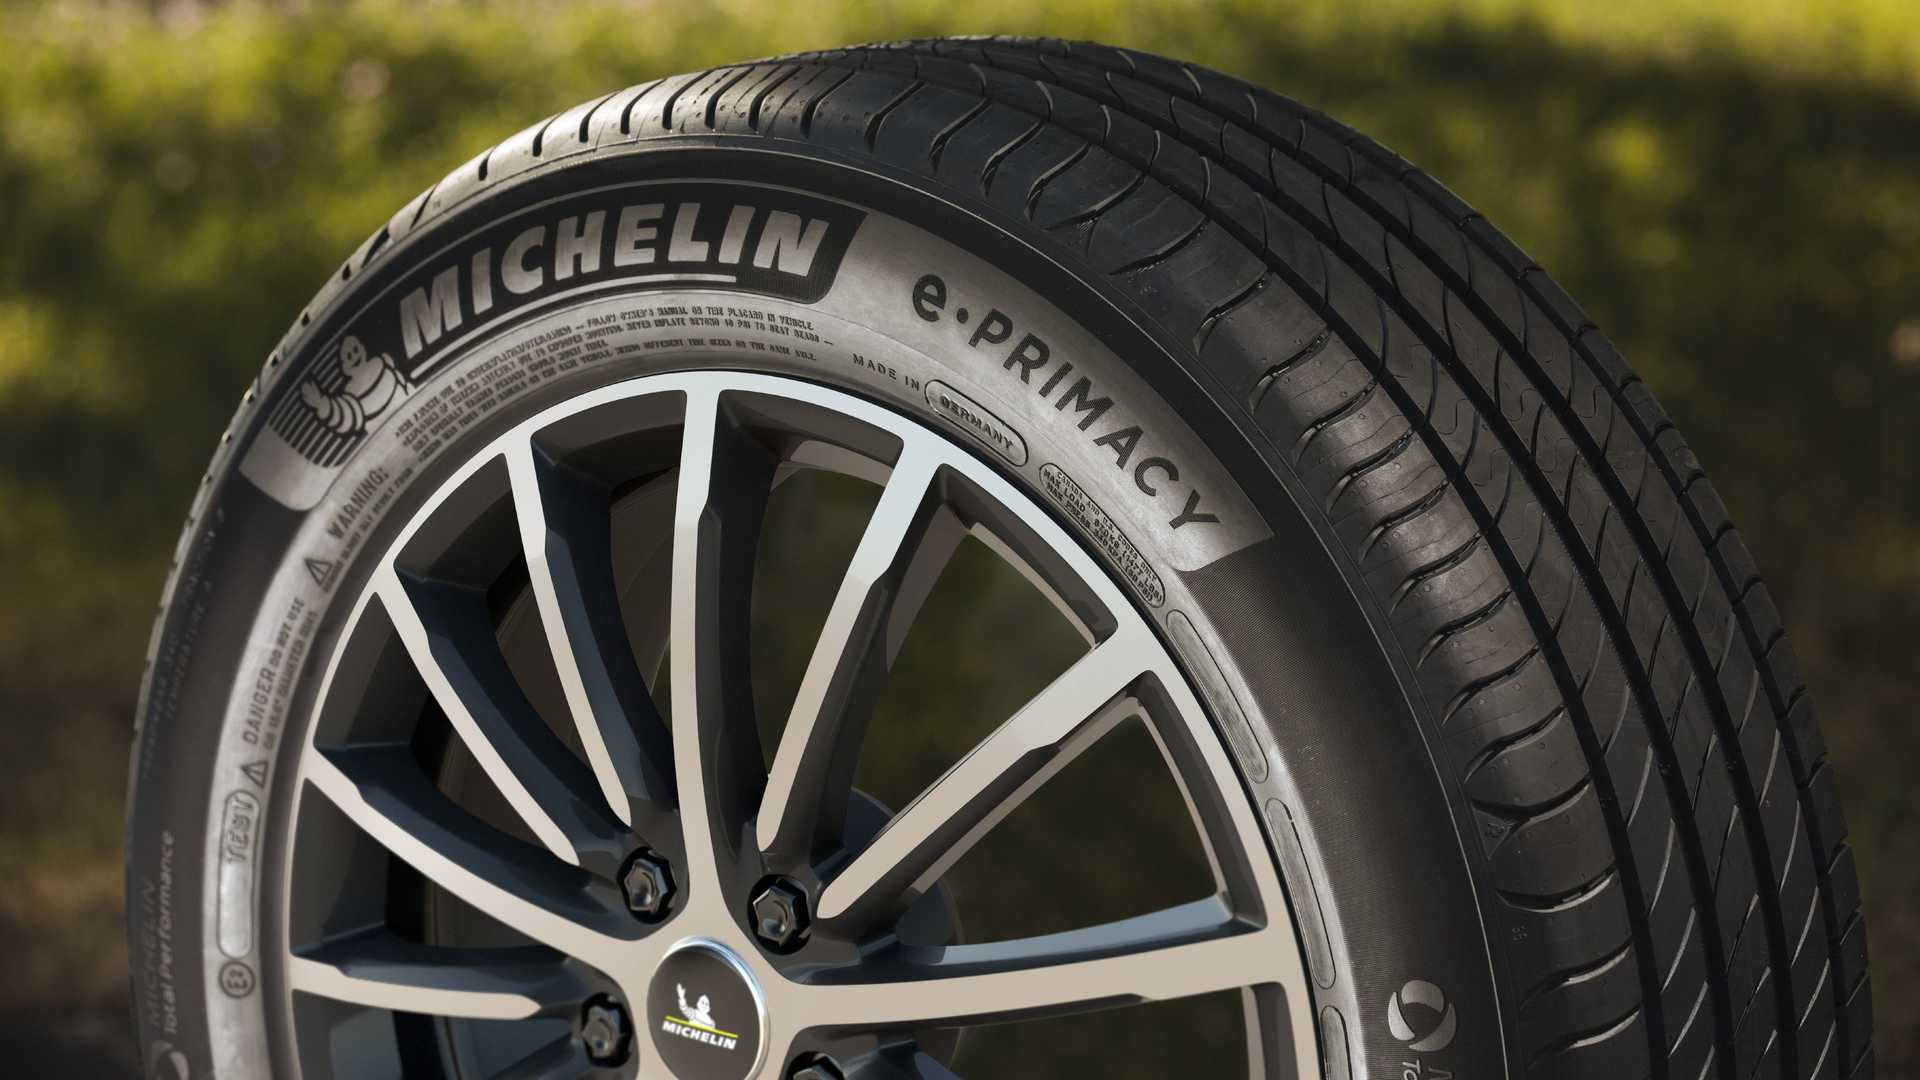 Michelin inaugura punto de venta de Michelin en Guadalajara